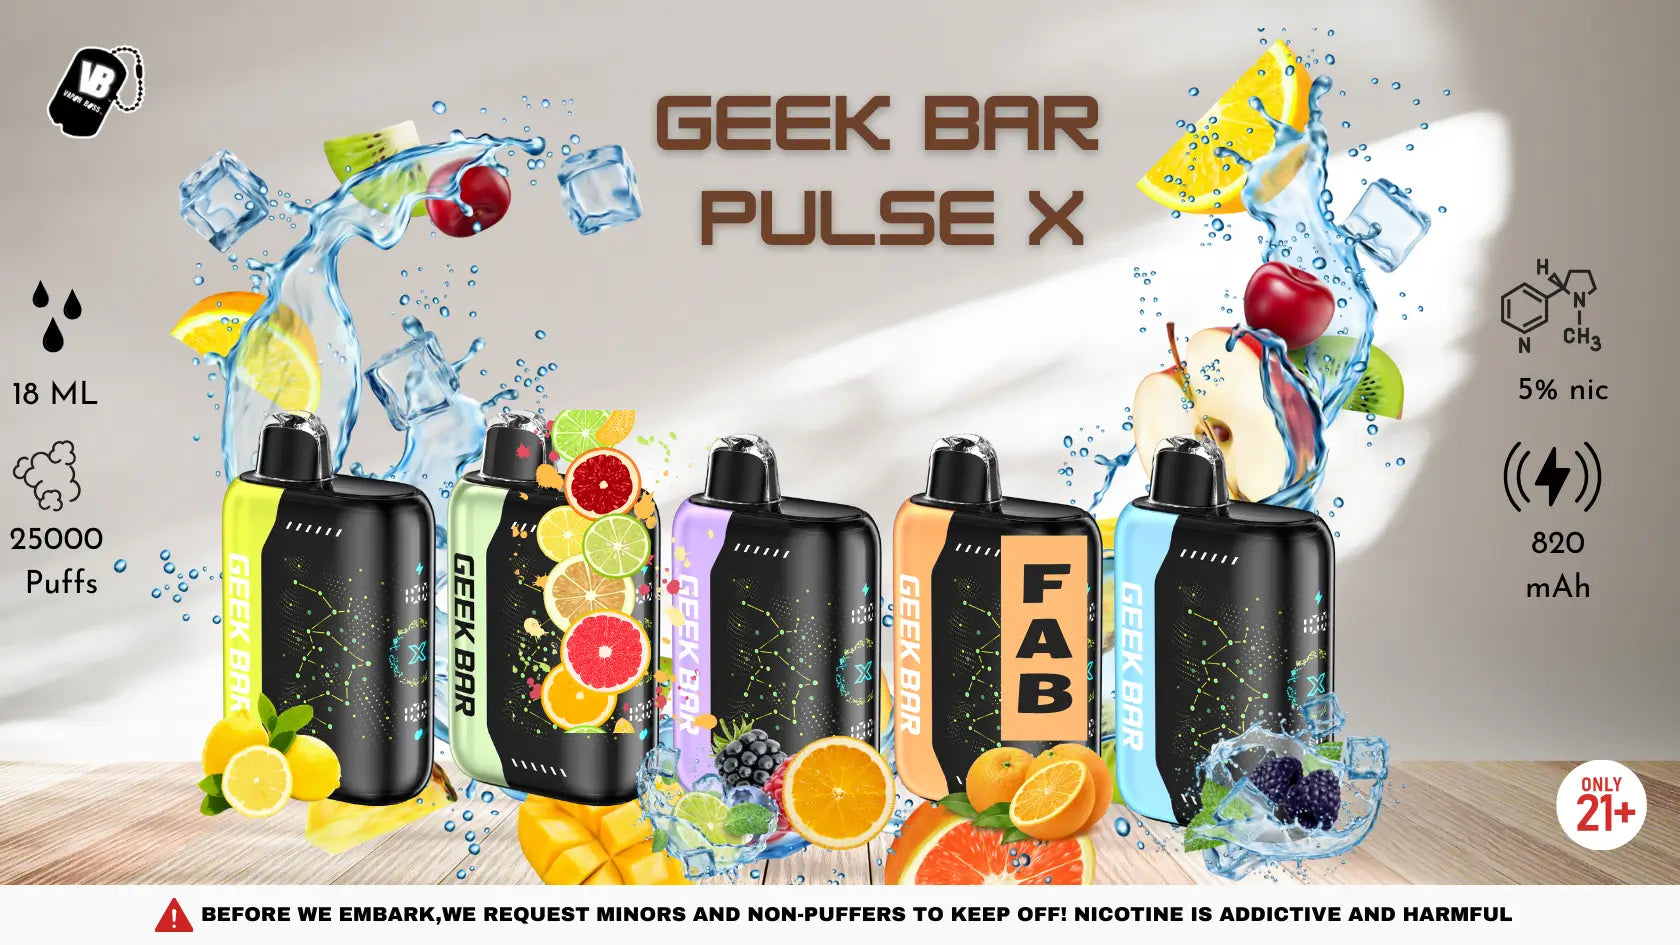 Geek Bar Pulse X Review